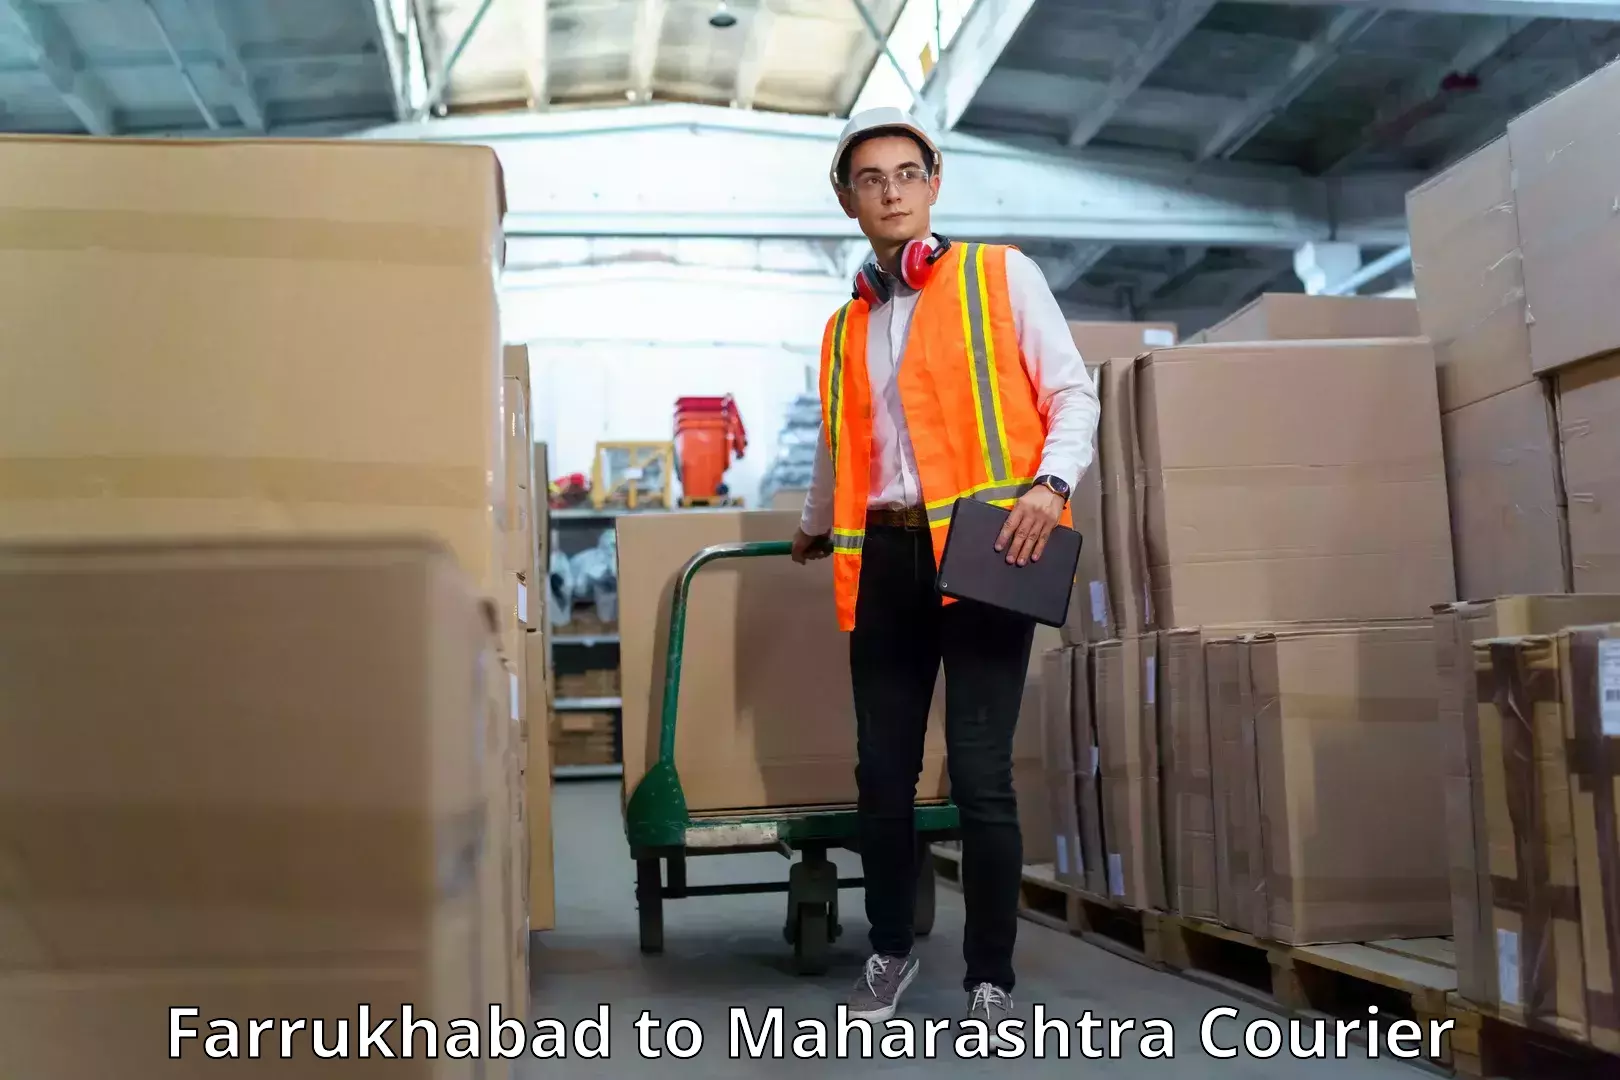 High-capacity parcel service Farrukhabad to Maharashtra